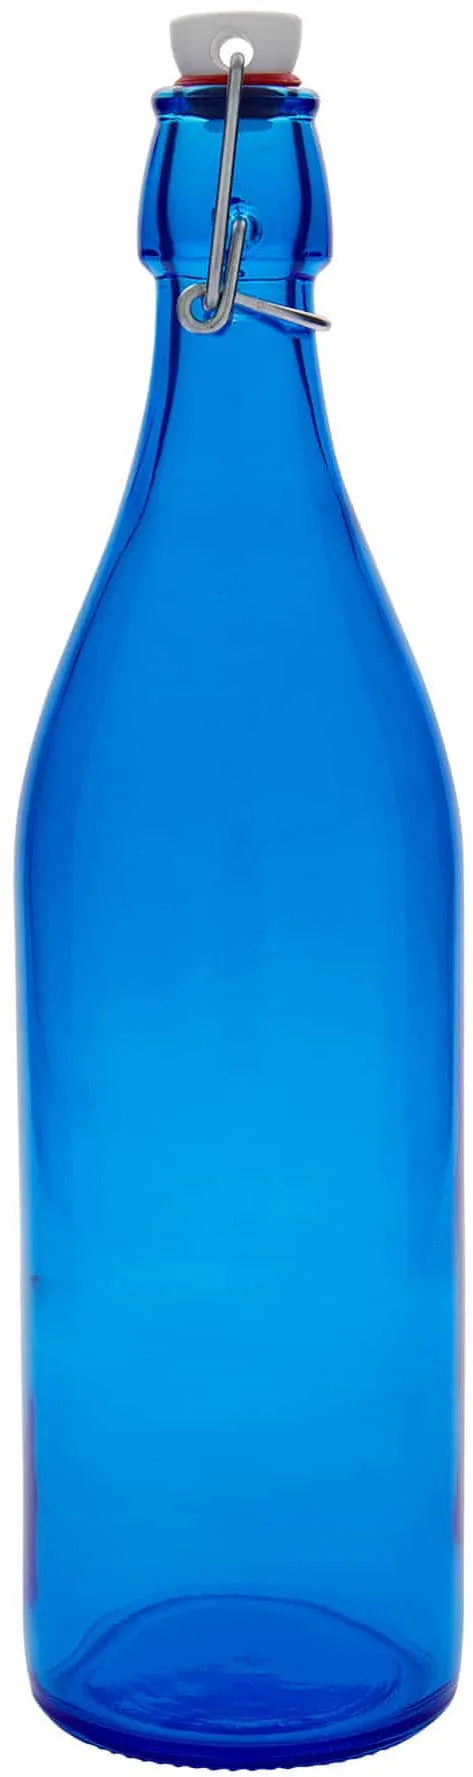 Botella de vidrio 'Giara' de 1000 ml, azul, boca: tapón mecánico